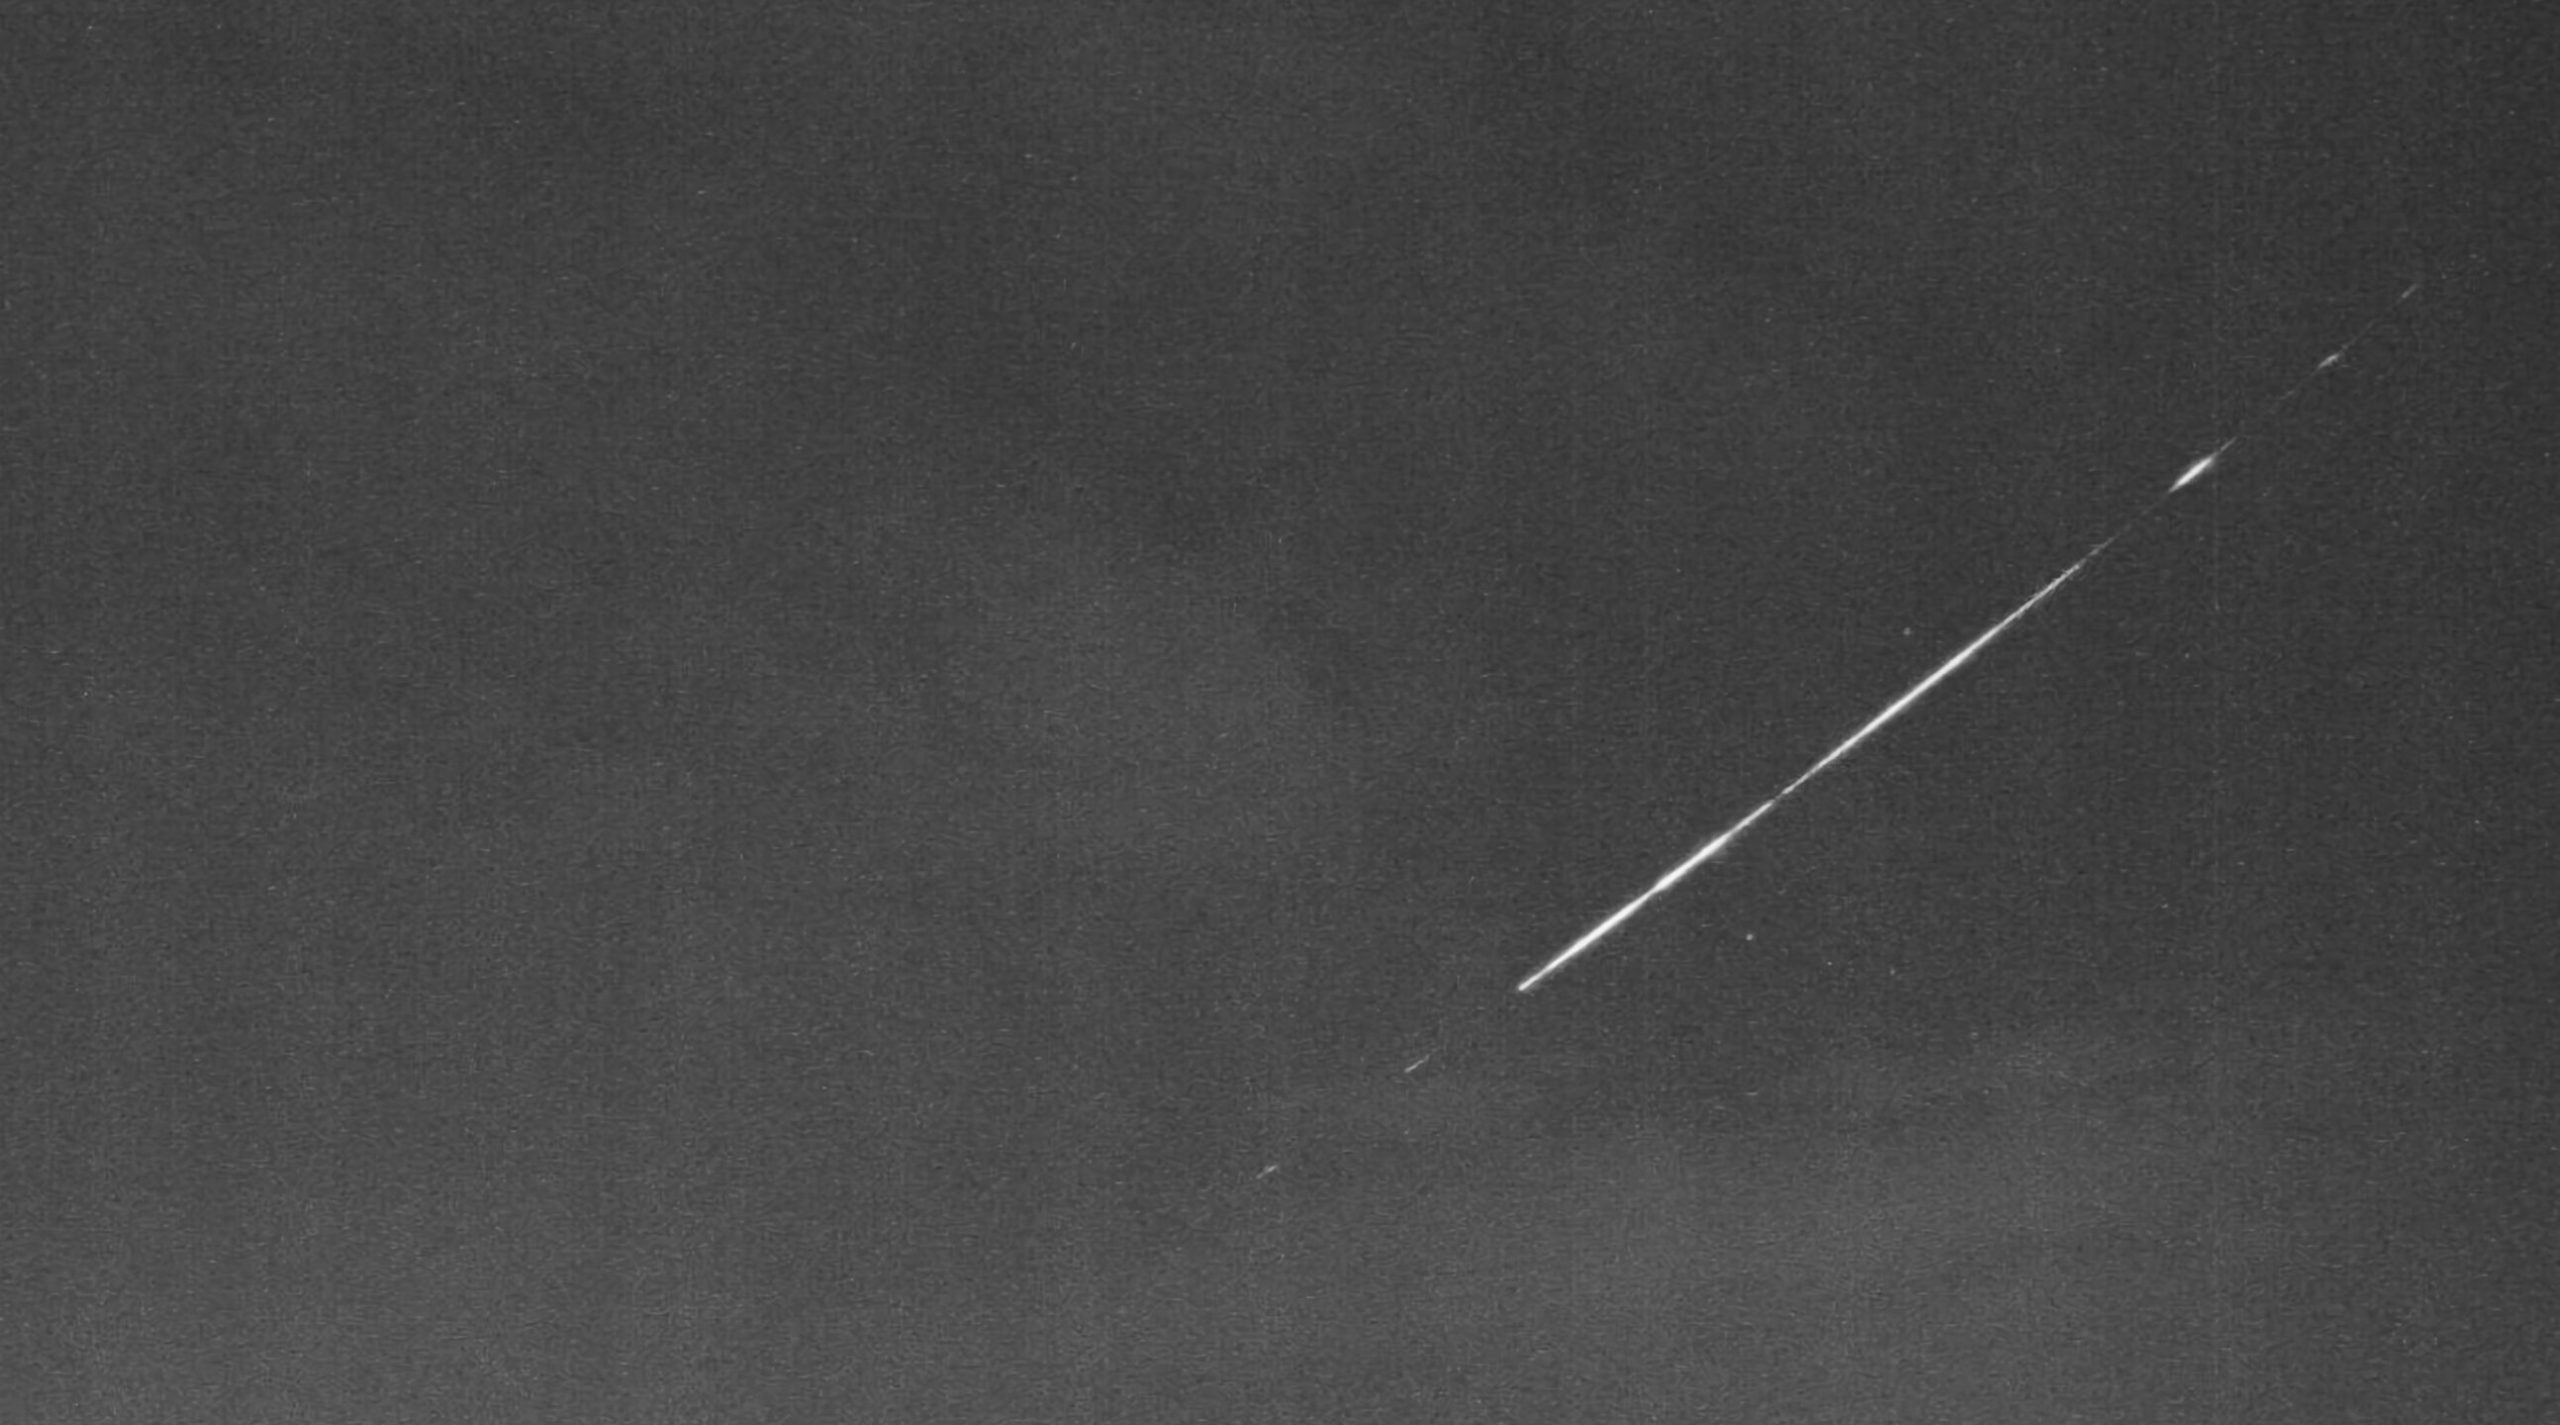 Ce n'est pas une météorite, c'est un satellite Starlink qui est tombé au-dessus de l'Espagne